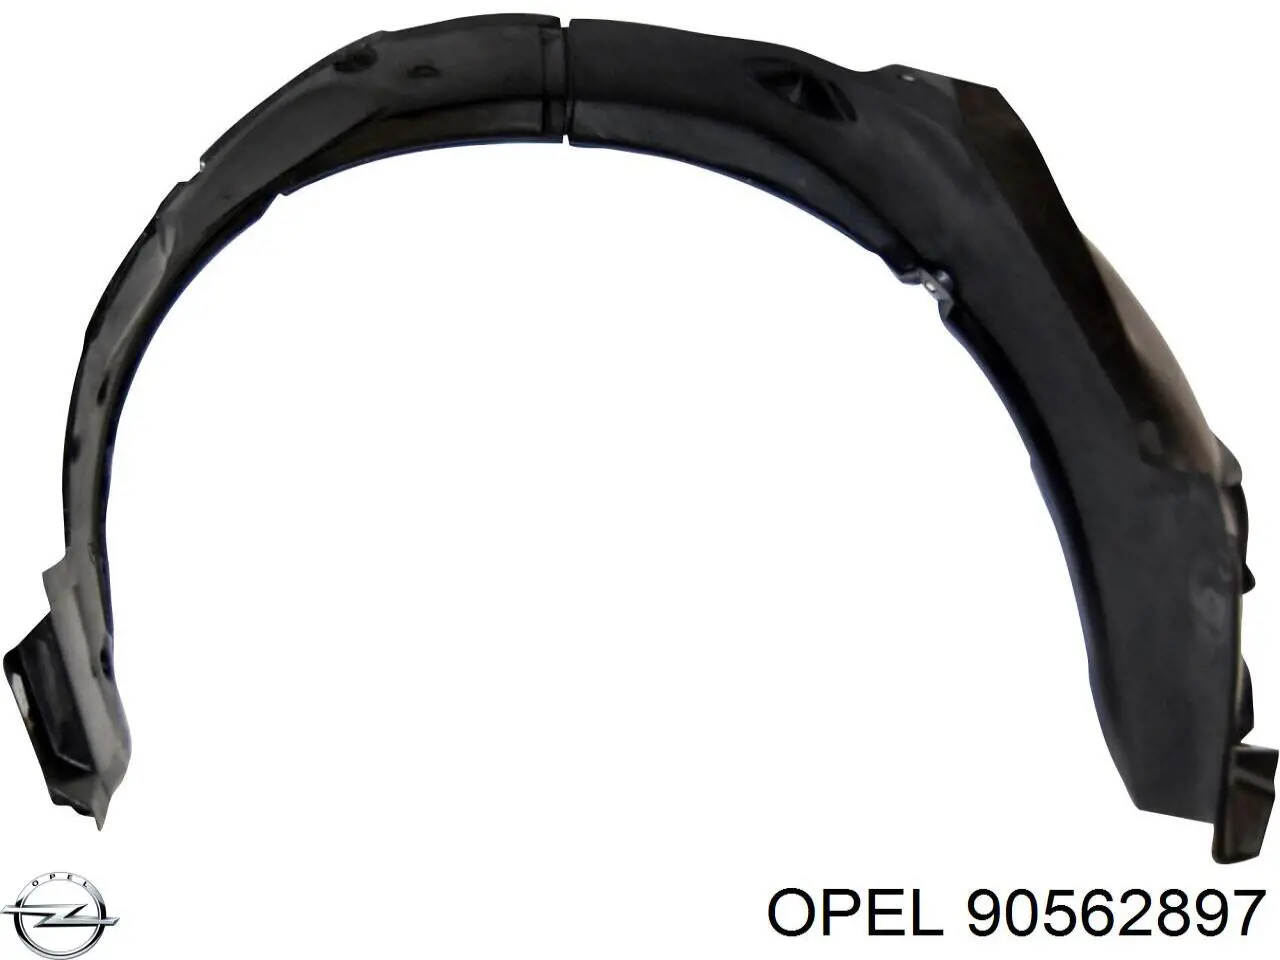 90562897 Opel guardabarros interior, aleta delantera, izquierdo